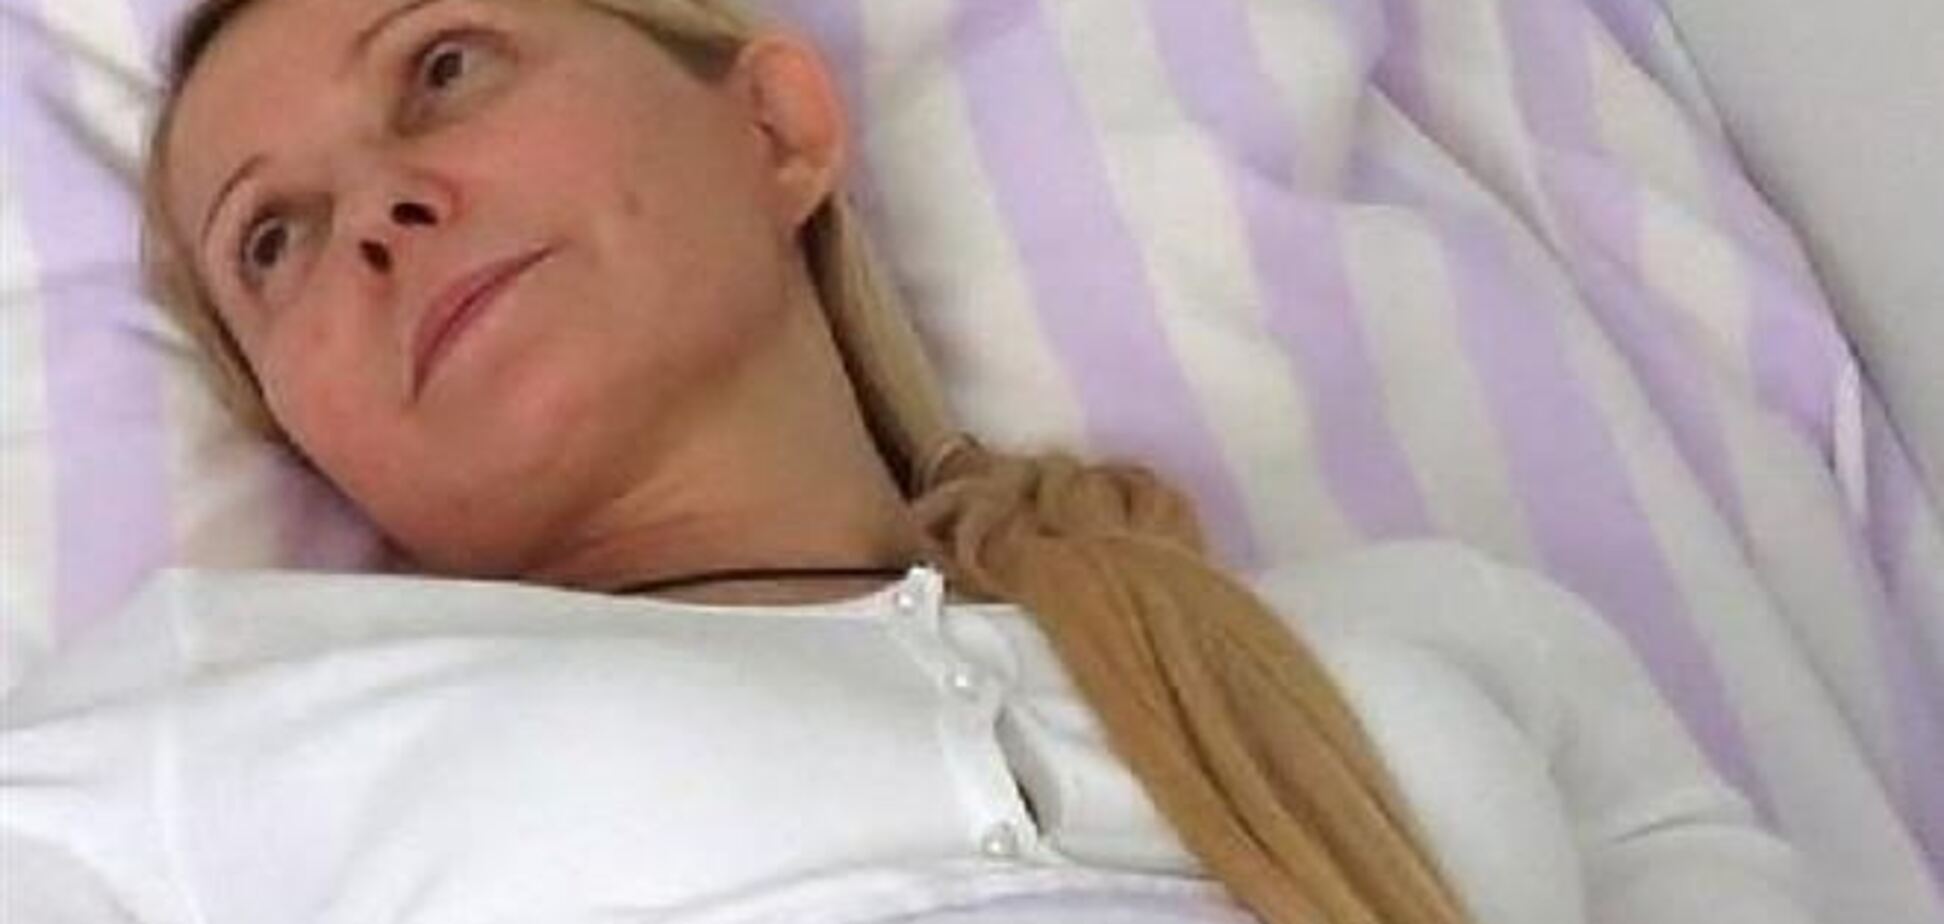 Для обеспечения лечения Тимошенко Рада может ввести тюремную отсрочку - эксперт